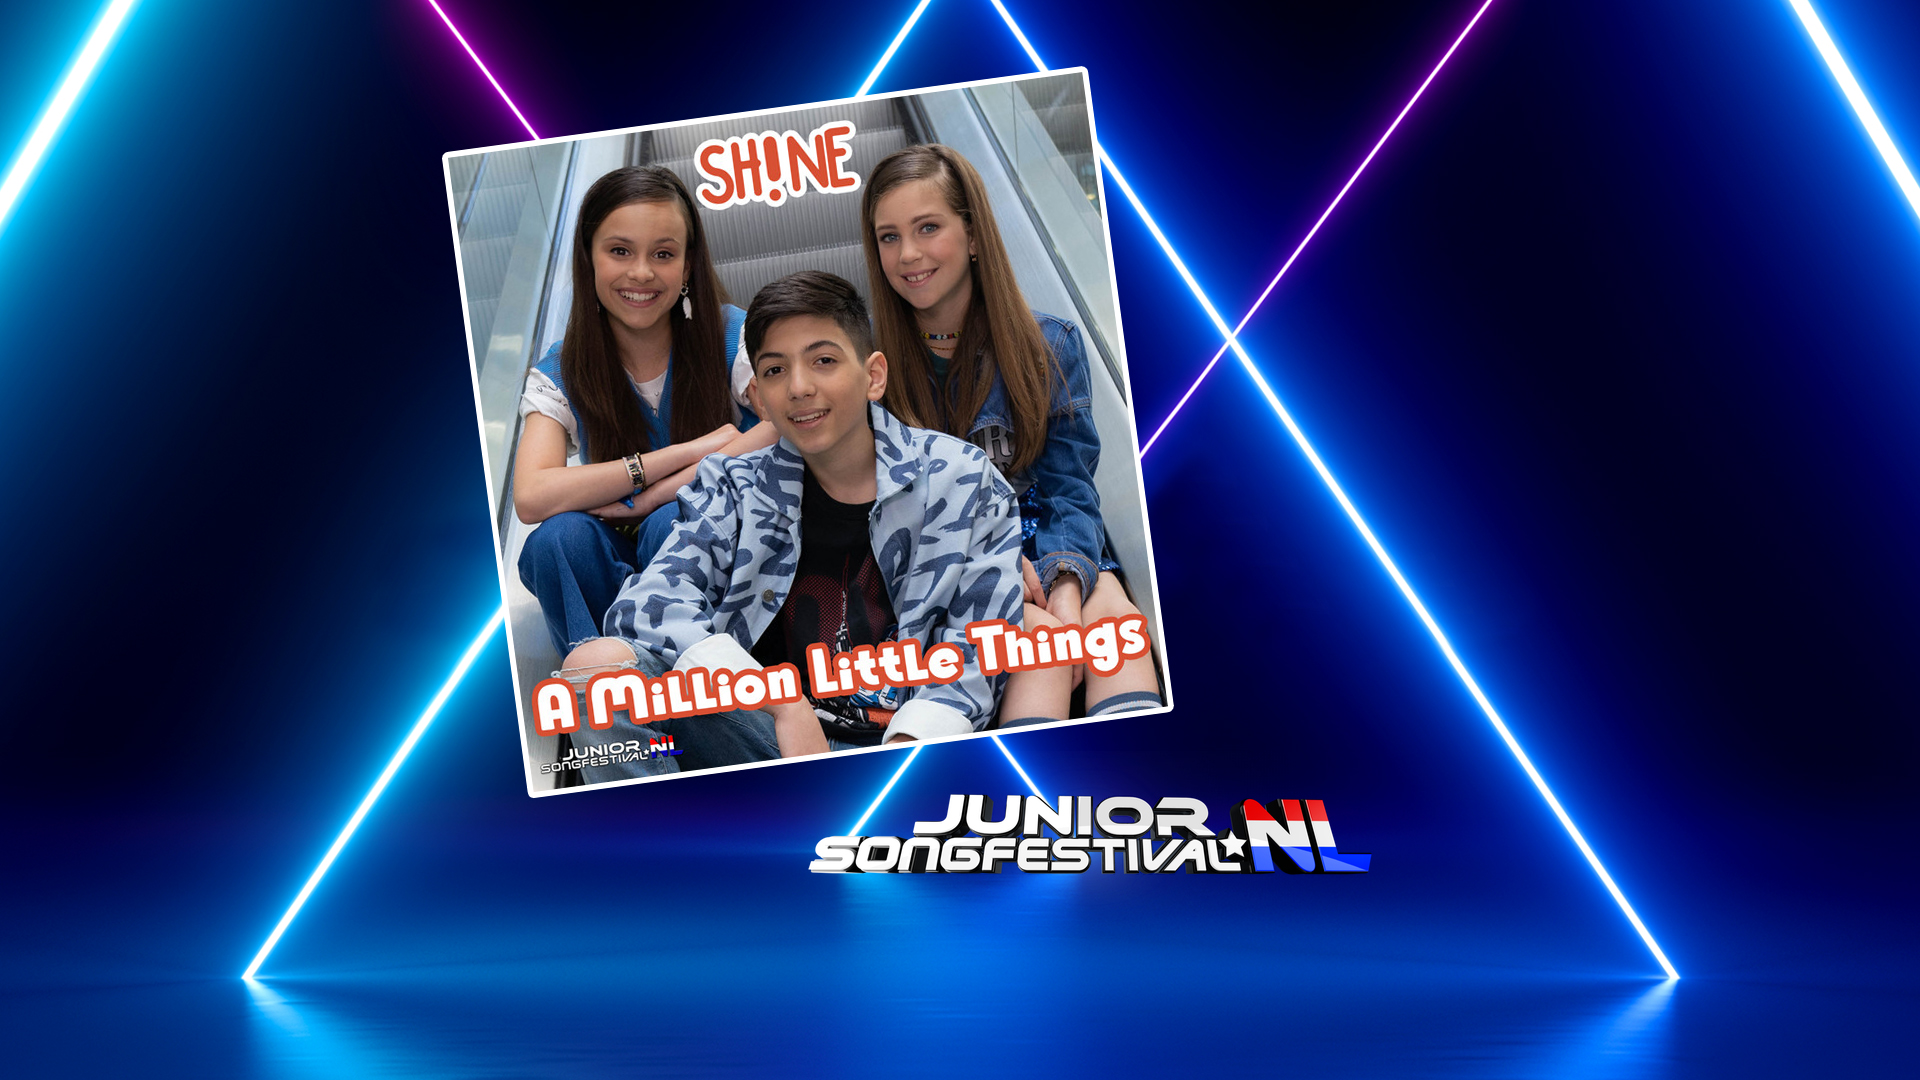 Países Bajos presenta «A Million Little Things», la cuarta y última canción del Junior Songfestival 2021